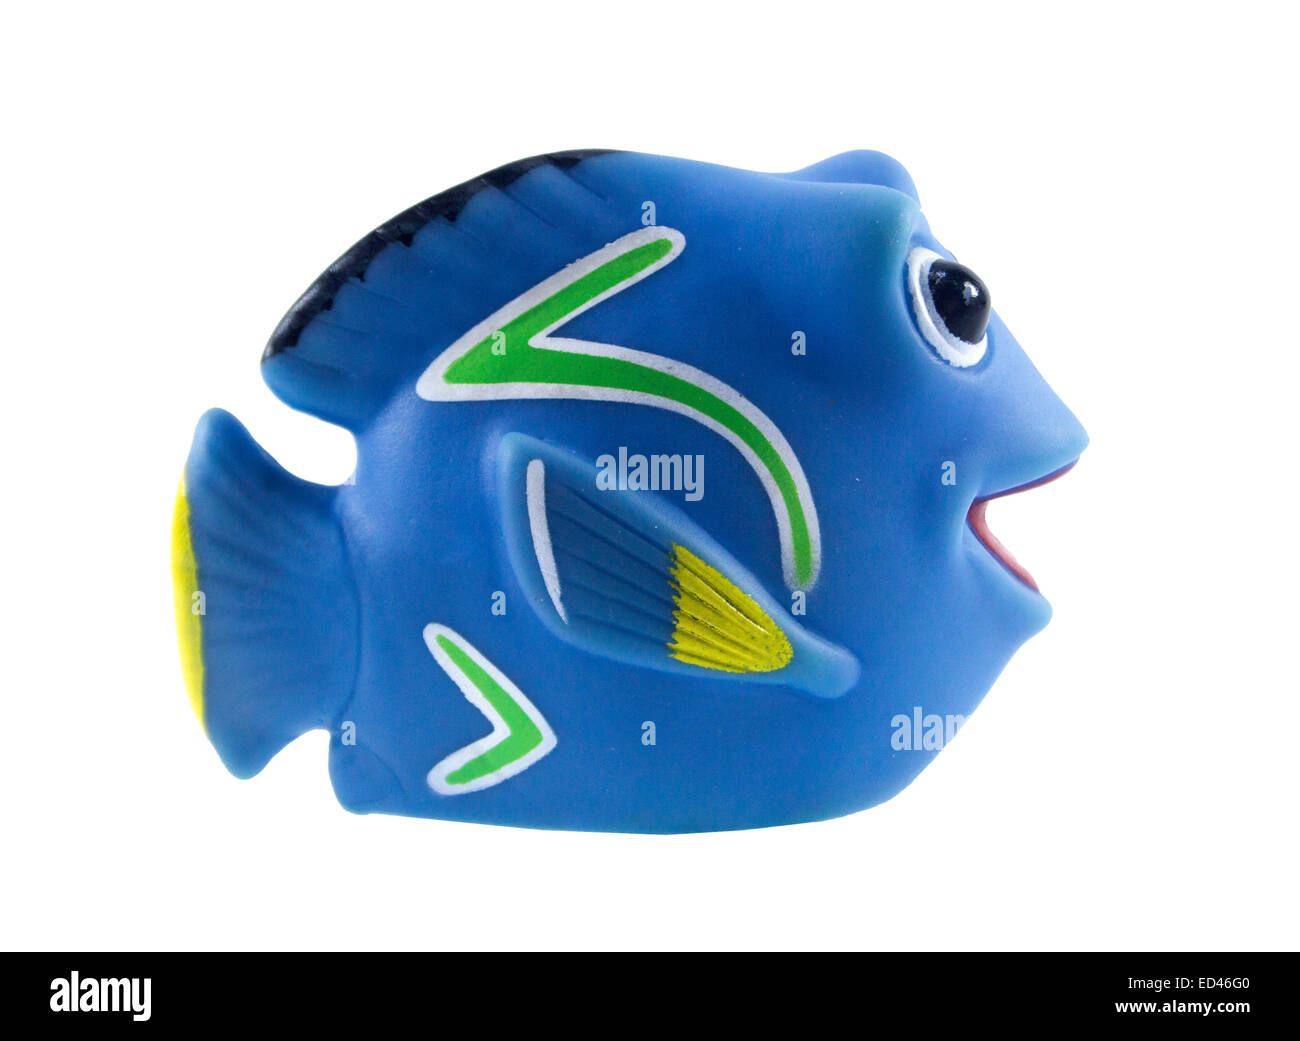 Amman, Jordanien - 1. November 2014: Marlin Fisch Spielzeug Zeichentrickfigur von findet Nemo Film von Disney Pixar Animationsstudios. Stockfoto